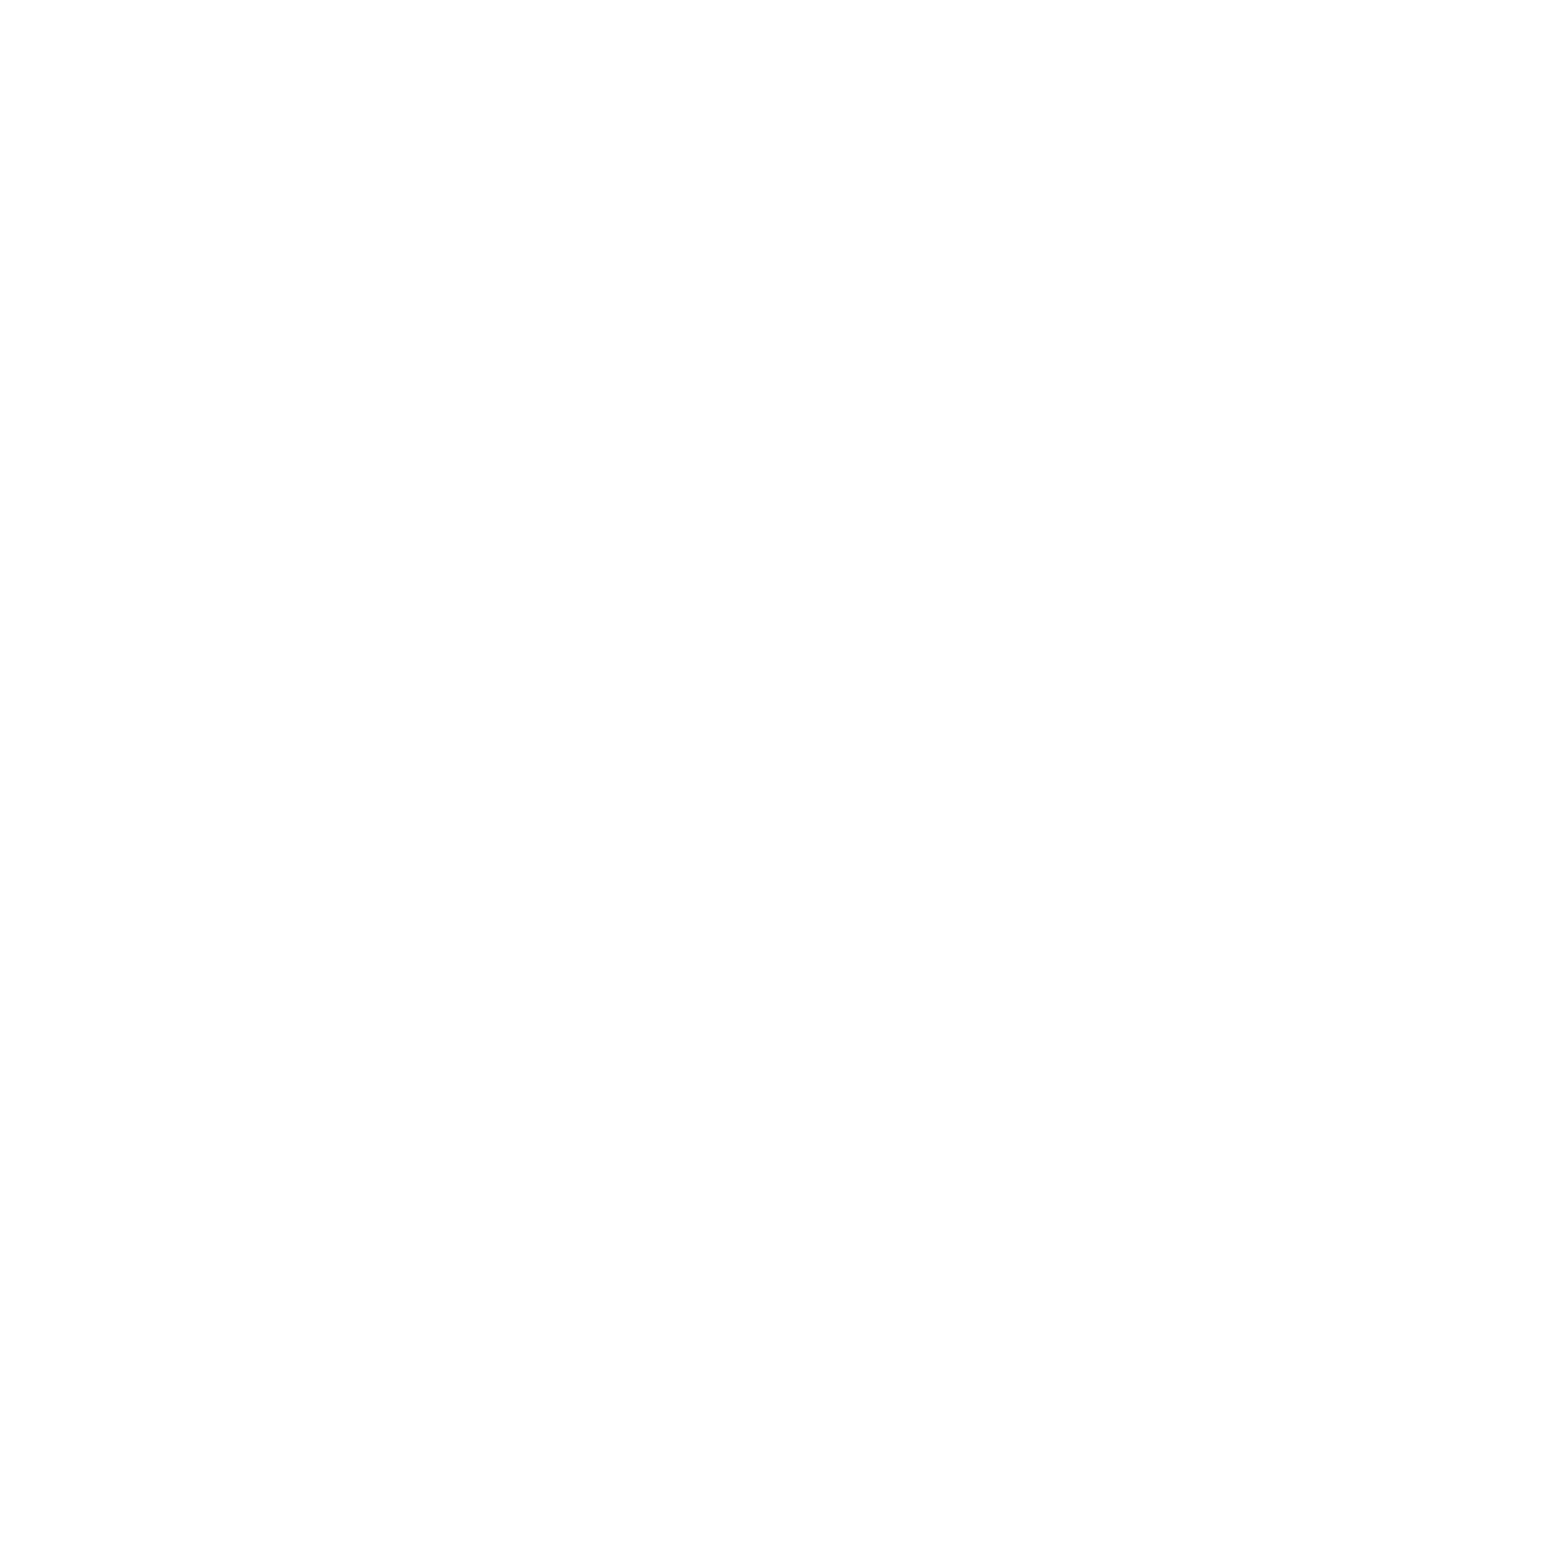 Bunge logo for dark backgrounds (transparent PNG)